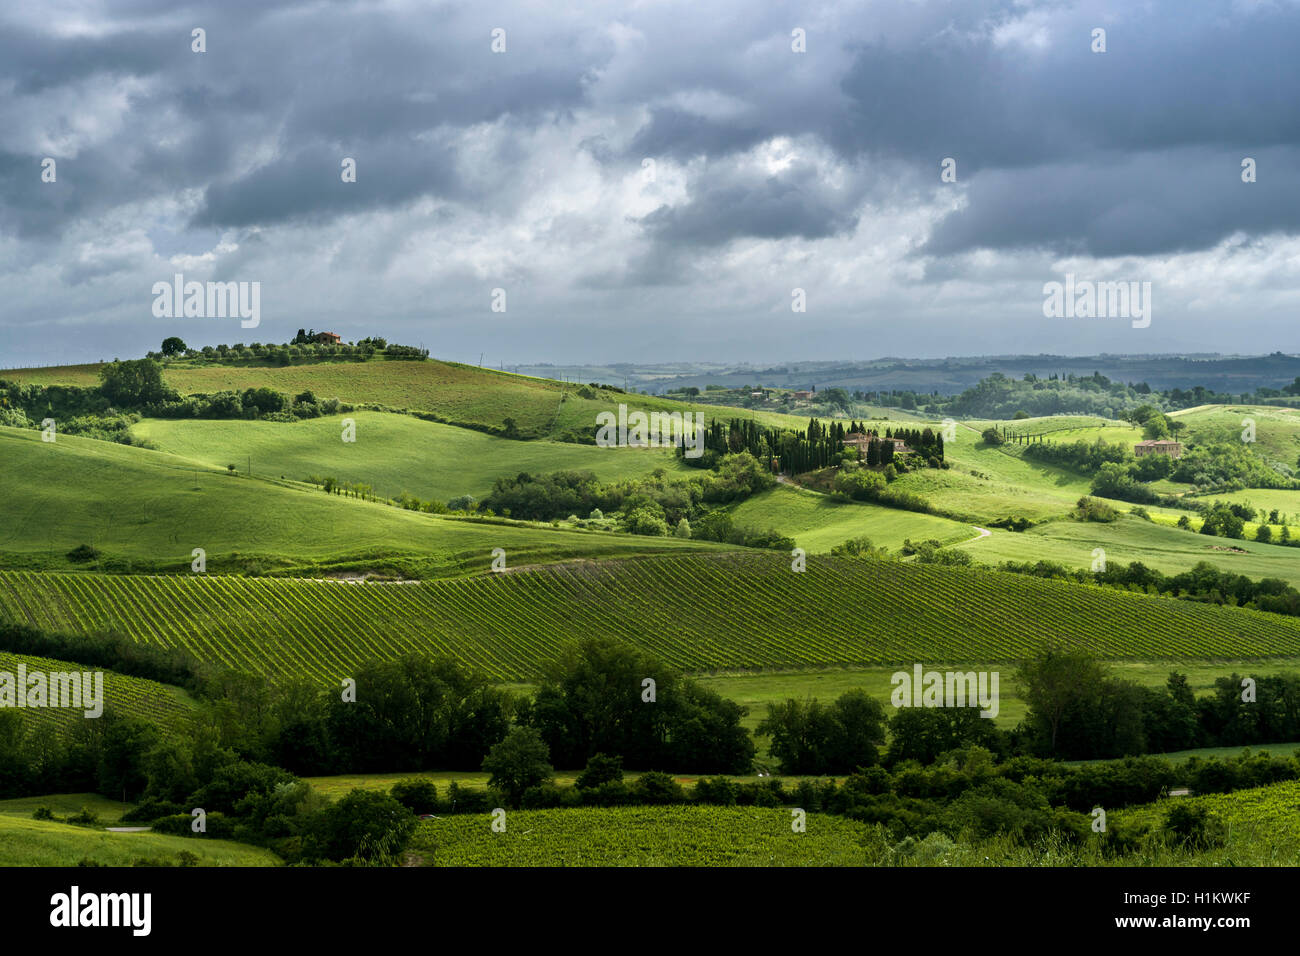 Typische Grün der toskanischen Landschaft im Val d'Orcia mit Hügel, Felder, Bäume, Weinbergen, Olivenplantagen und bewölkter Himmel Stockfoto